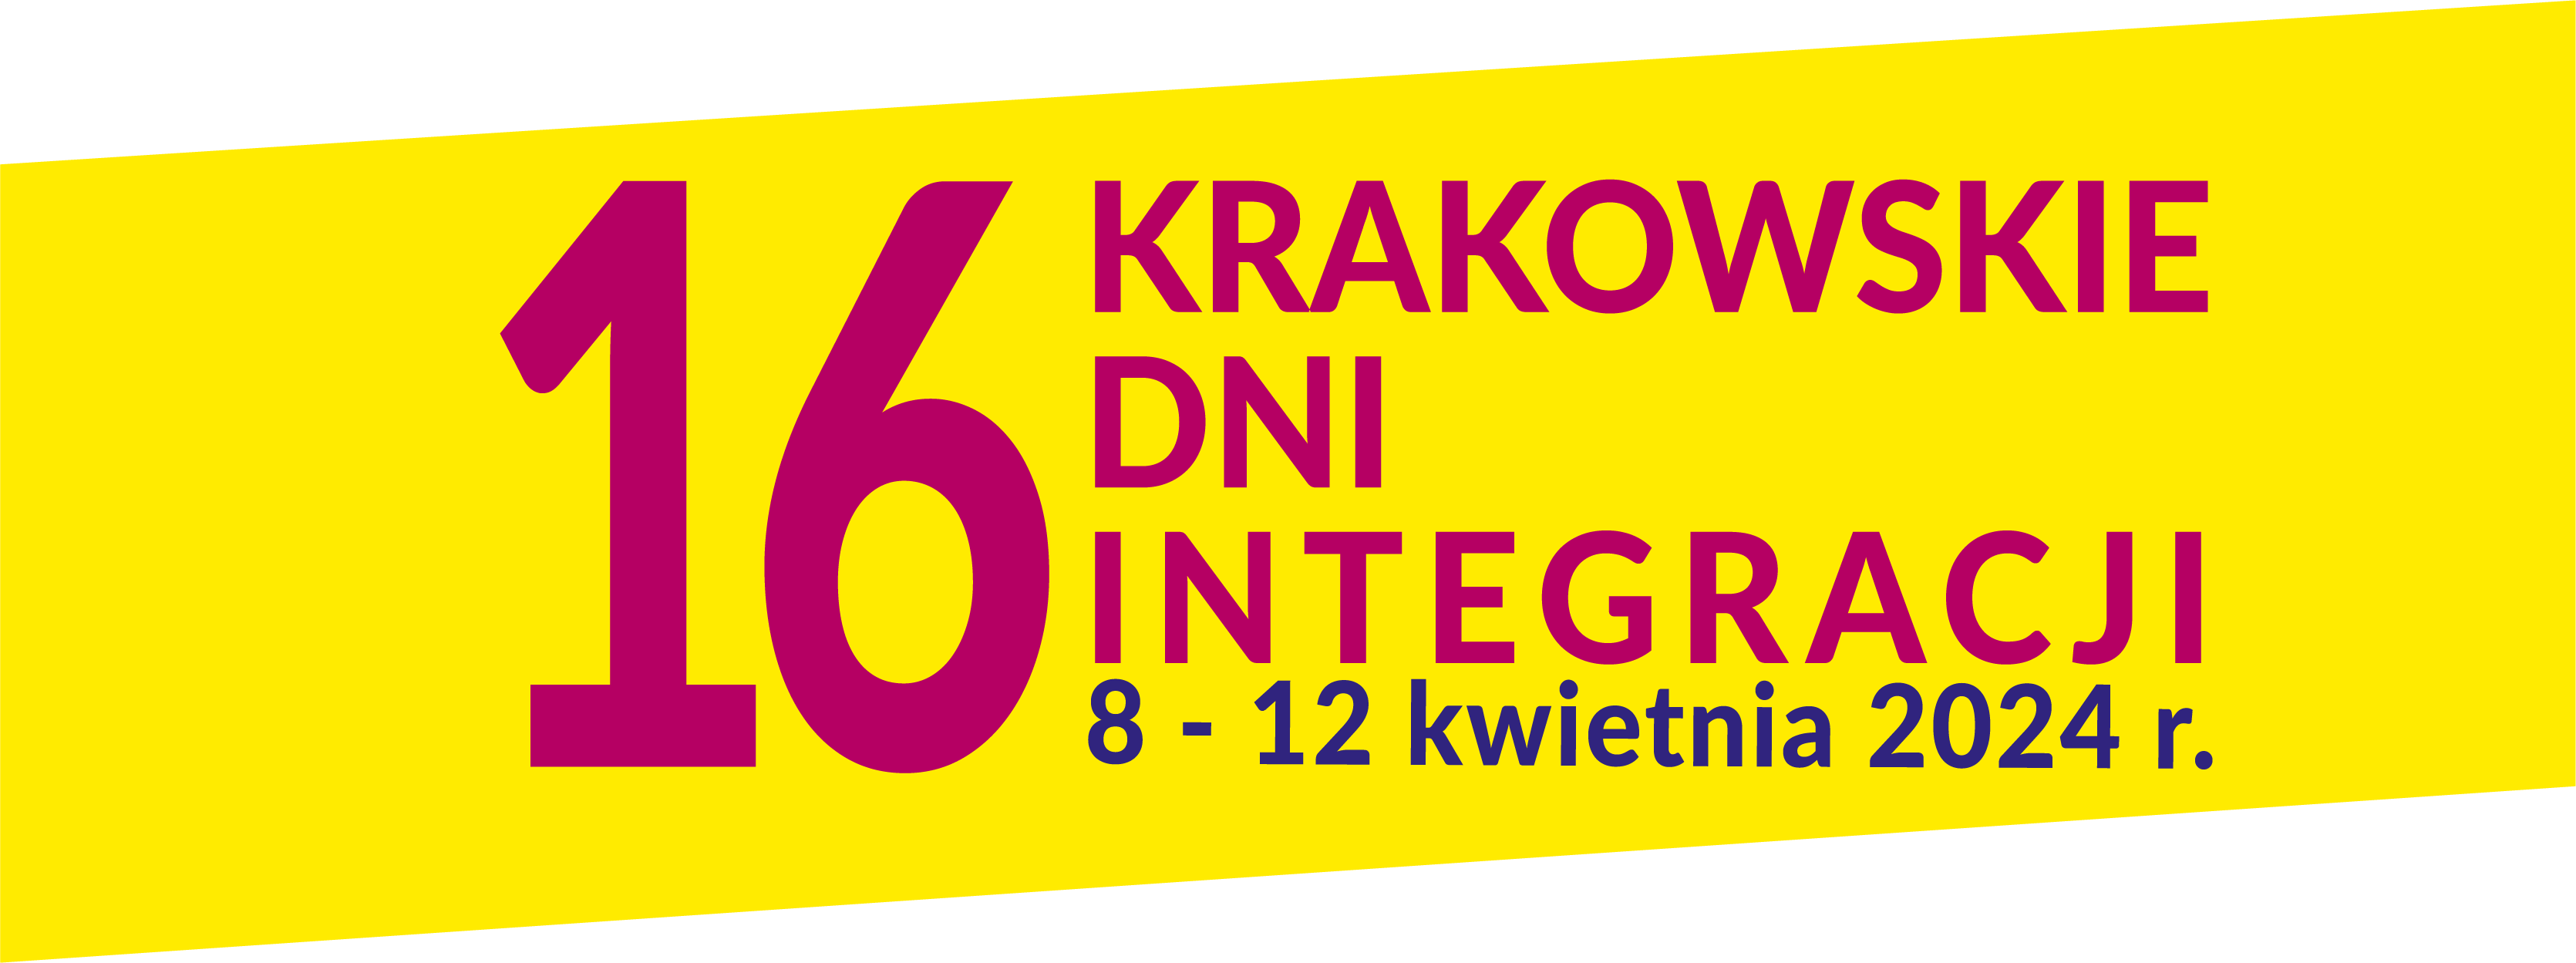 Logotyp Krakowskich Dni Integracji. Na żółtym tle okrąg a w nim ręce wokół obrysu okręgu stykające się palcami, za okręgiem napis 14 KRAKOWSKIE DNI INTEGRACJI 25-29 kwietnia 2022 r.